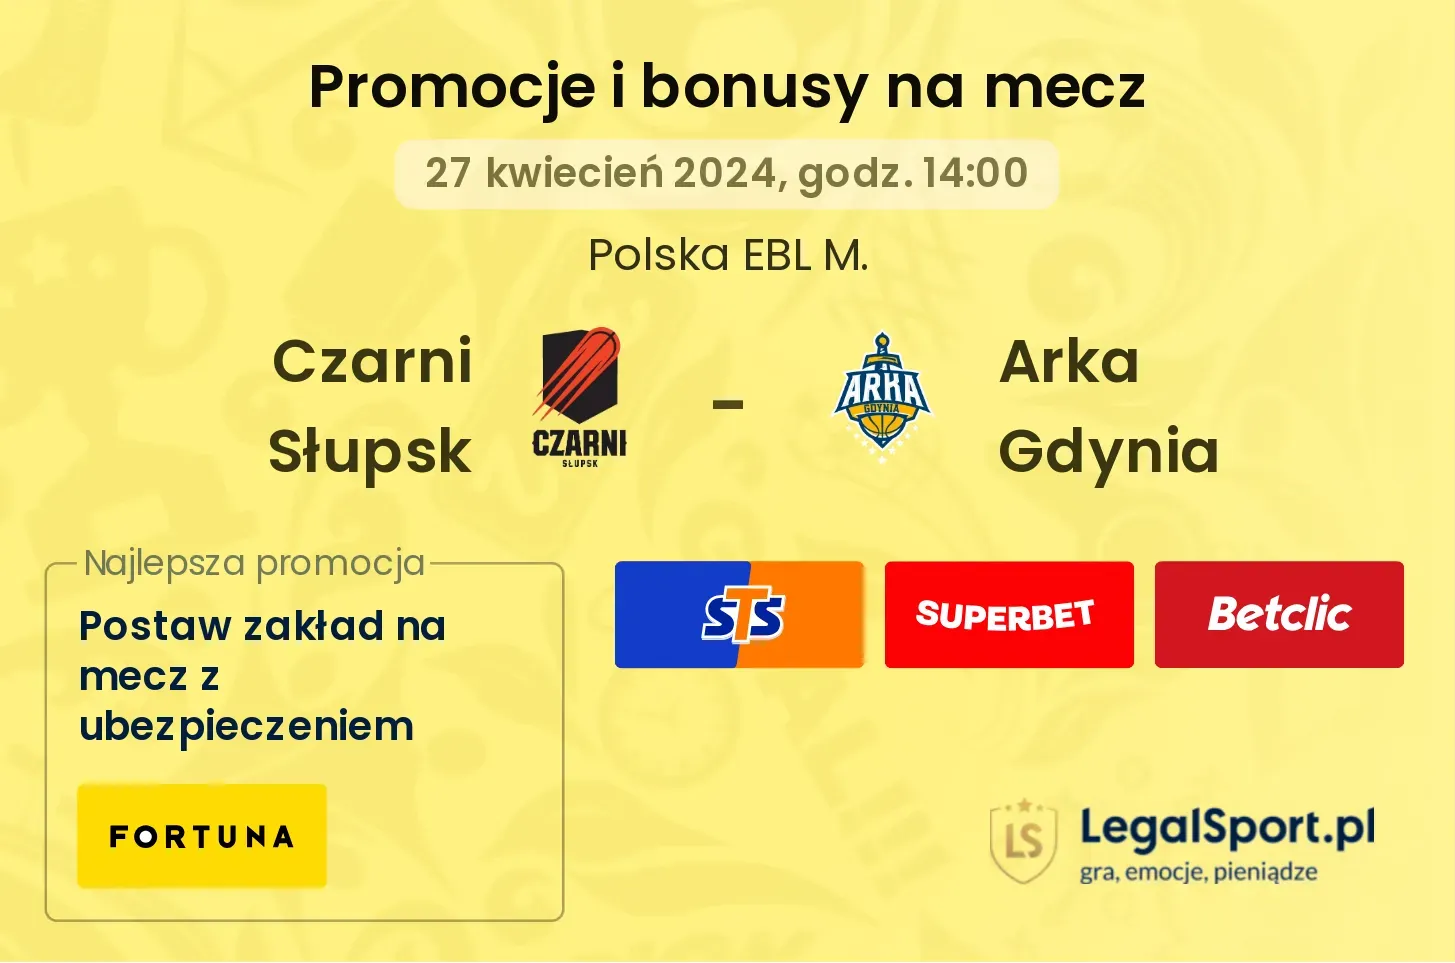 Czarni Słupsk - Arka Gdynia promocje bonusy na mecz